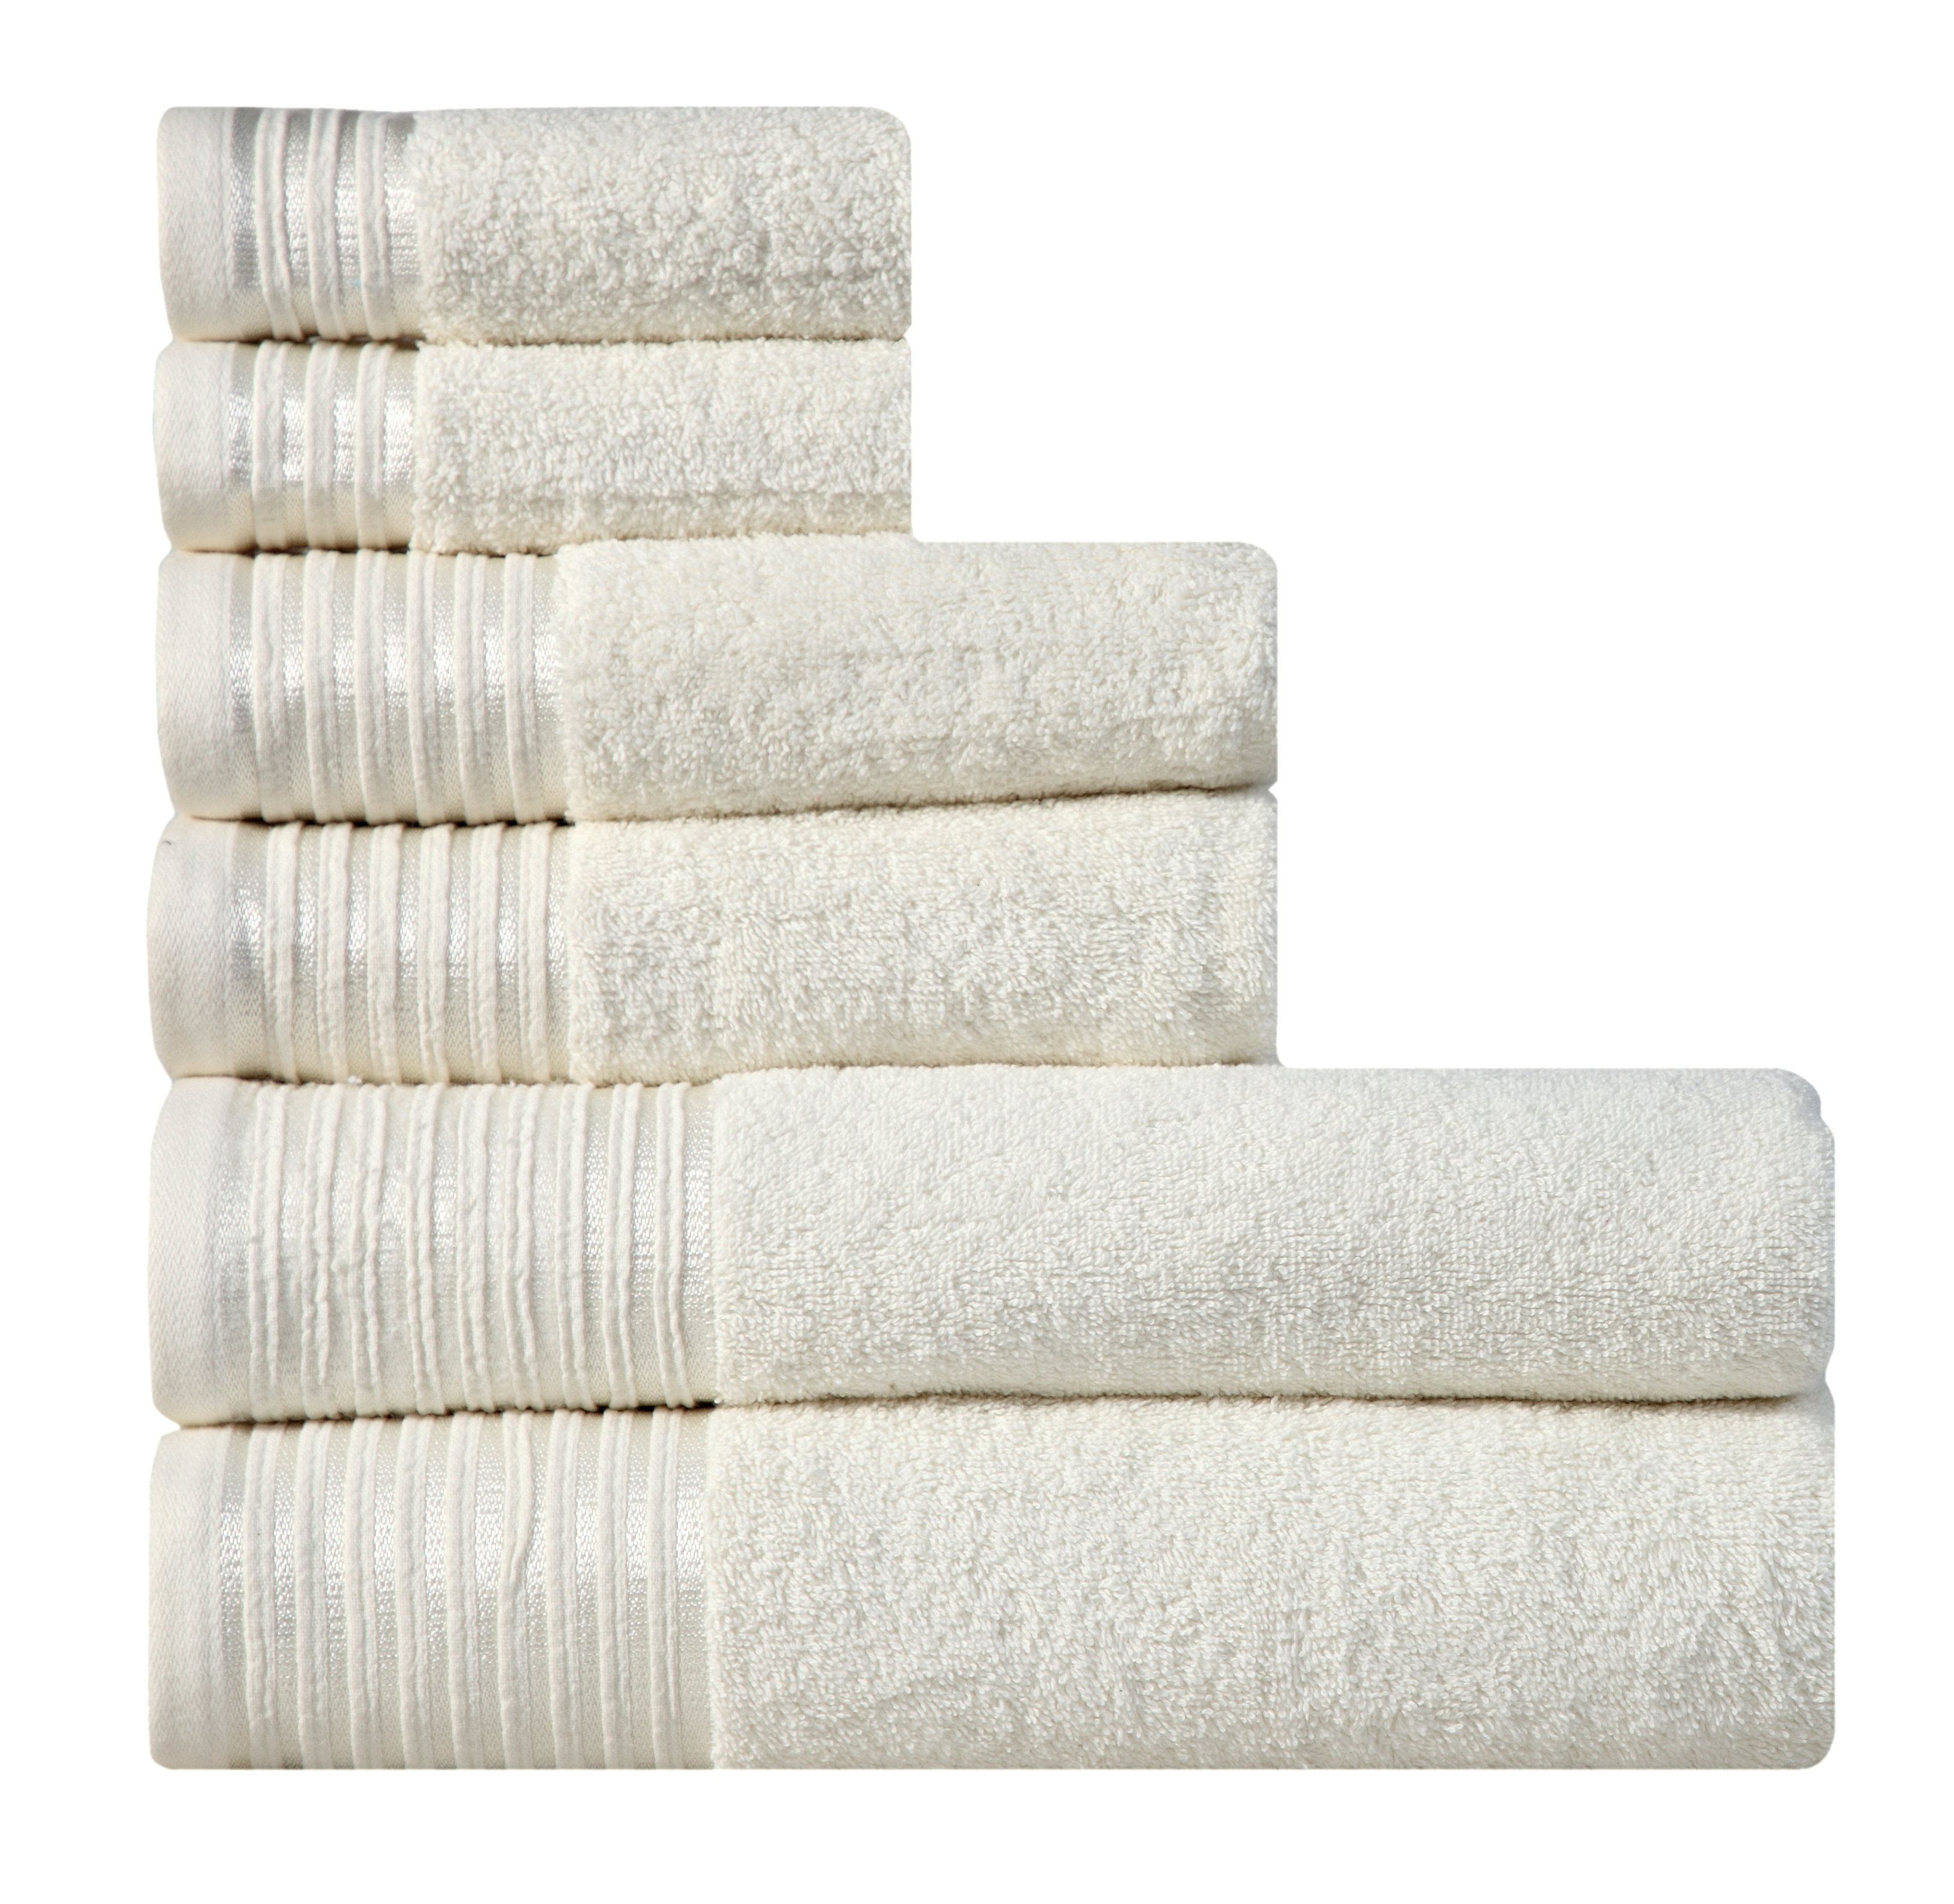 https://assets.wfcdn.com/im/75172382/compr-r85/6761/67618598/paulene-6-piece-100-cotton-towel-set.jpg